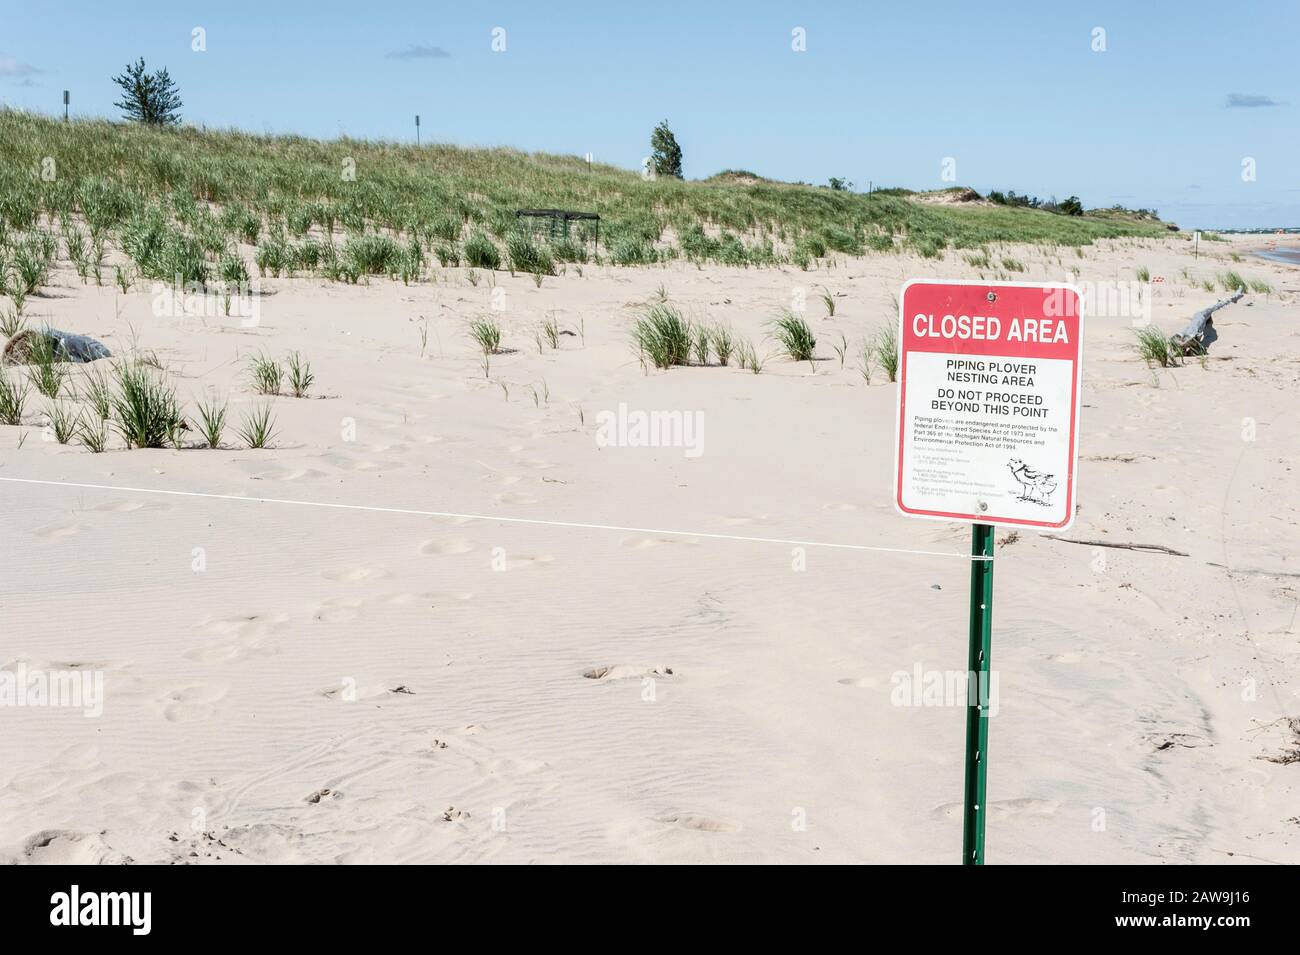 Piping cartello di chiusura sulla spiaggia di sabbia nella zona di Nordhouse Dunes Wilderness sulle rive del lago Michigan in Michigan, Stati Uniti. Foto Stock